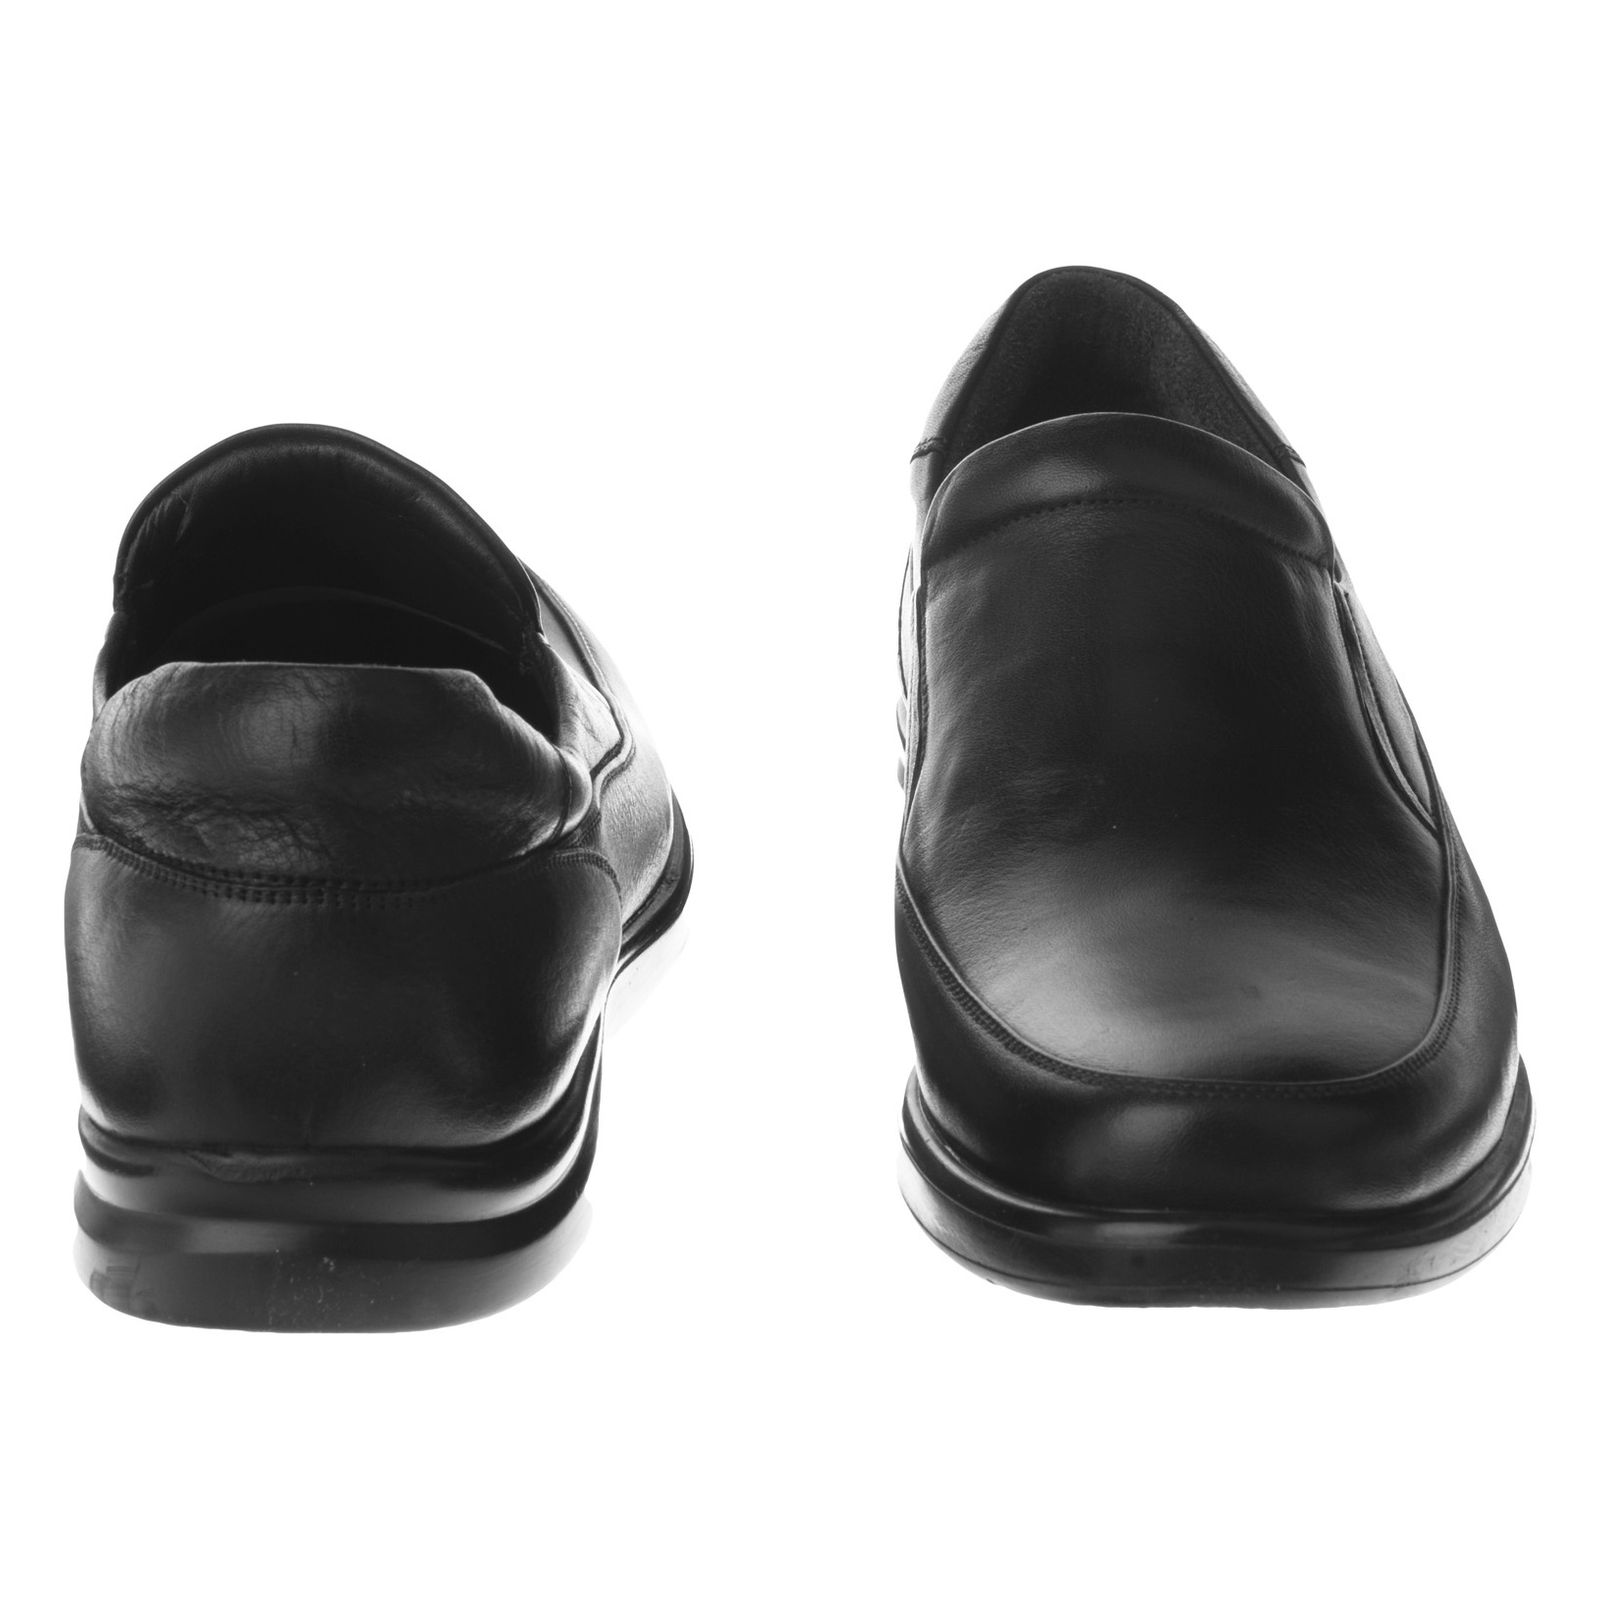 کفش روزمره مردانه اورسی مدل 771-27 - مشکی - 4